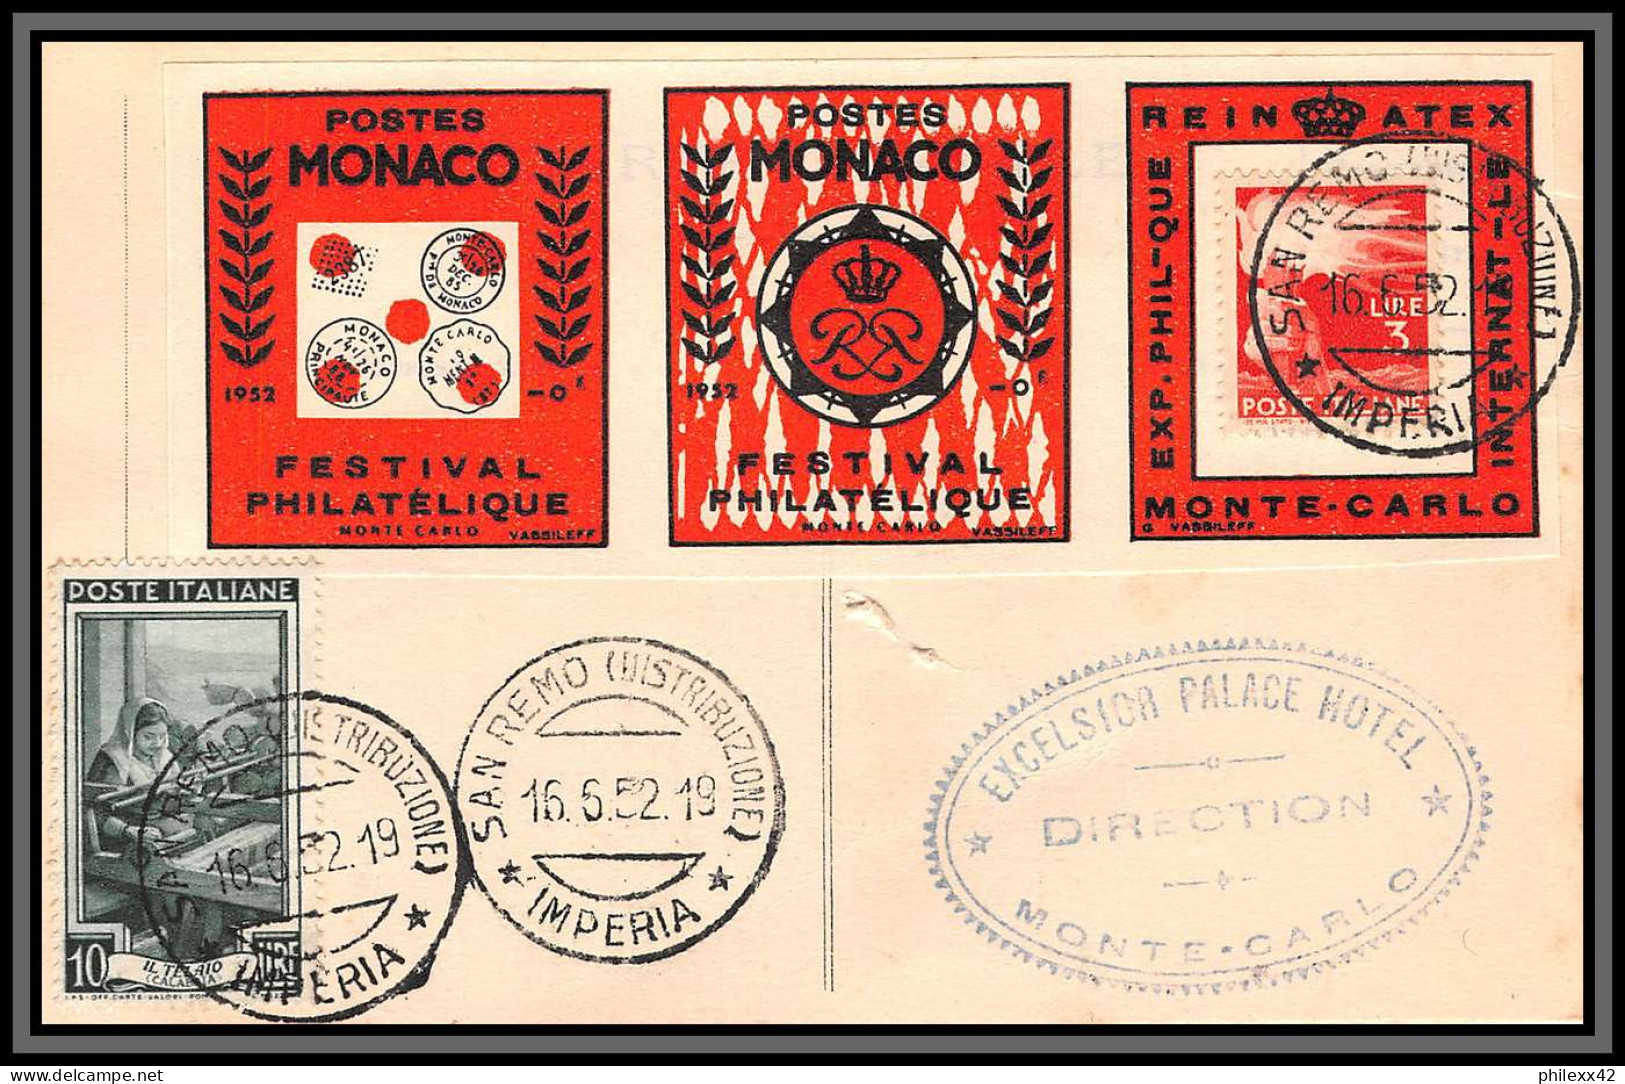 74926 (6) REINATEX 1952 joli lot collection vignette porte timbre stamp holder lettre cover Monaco france italia